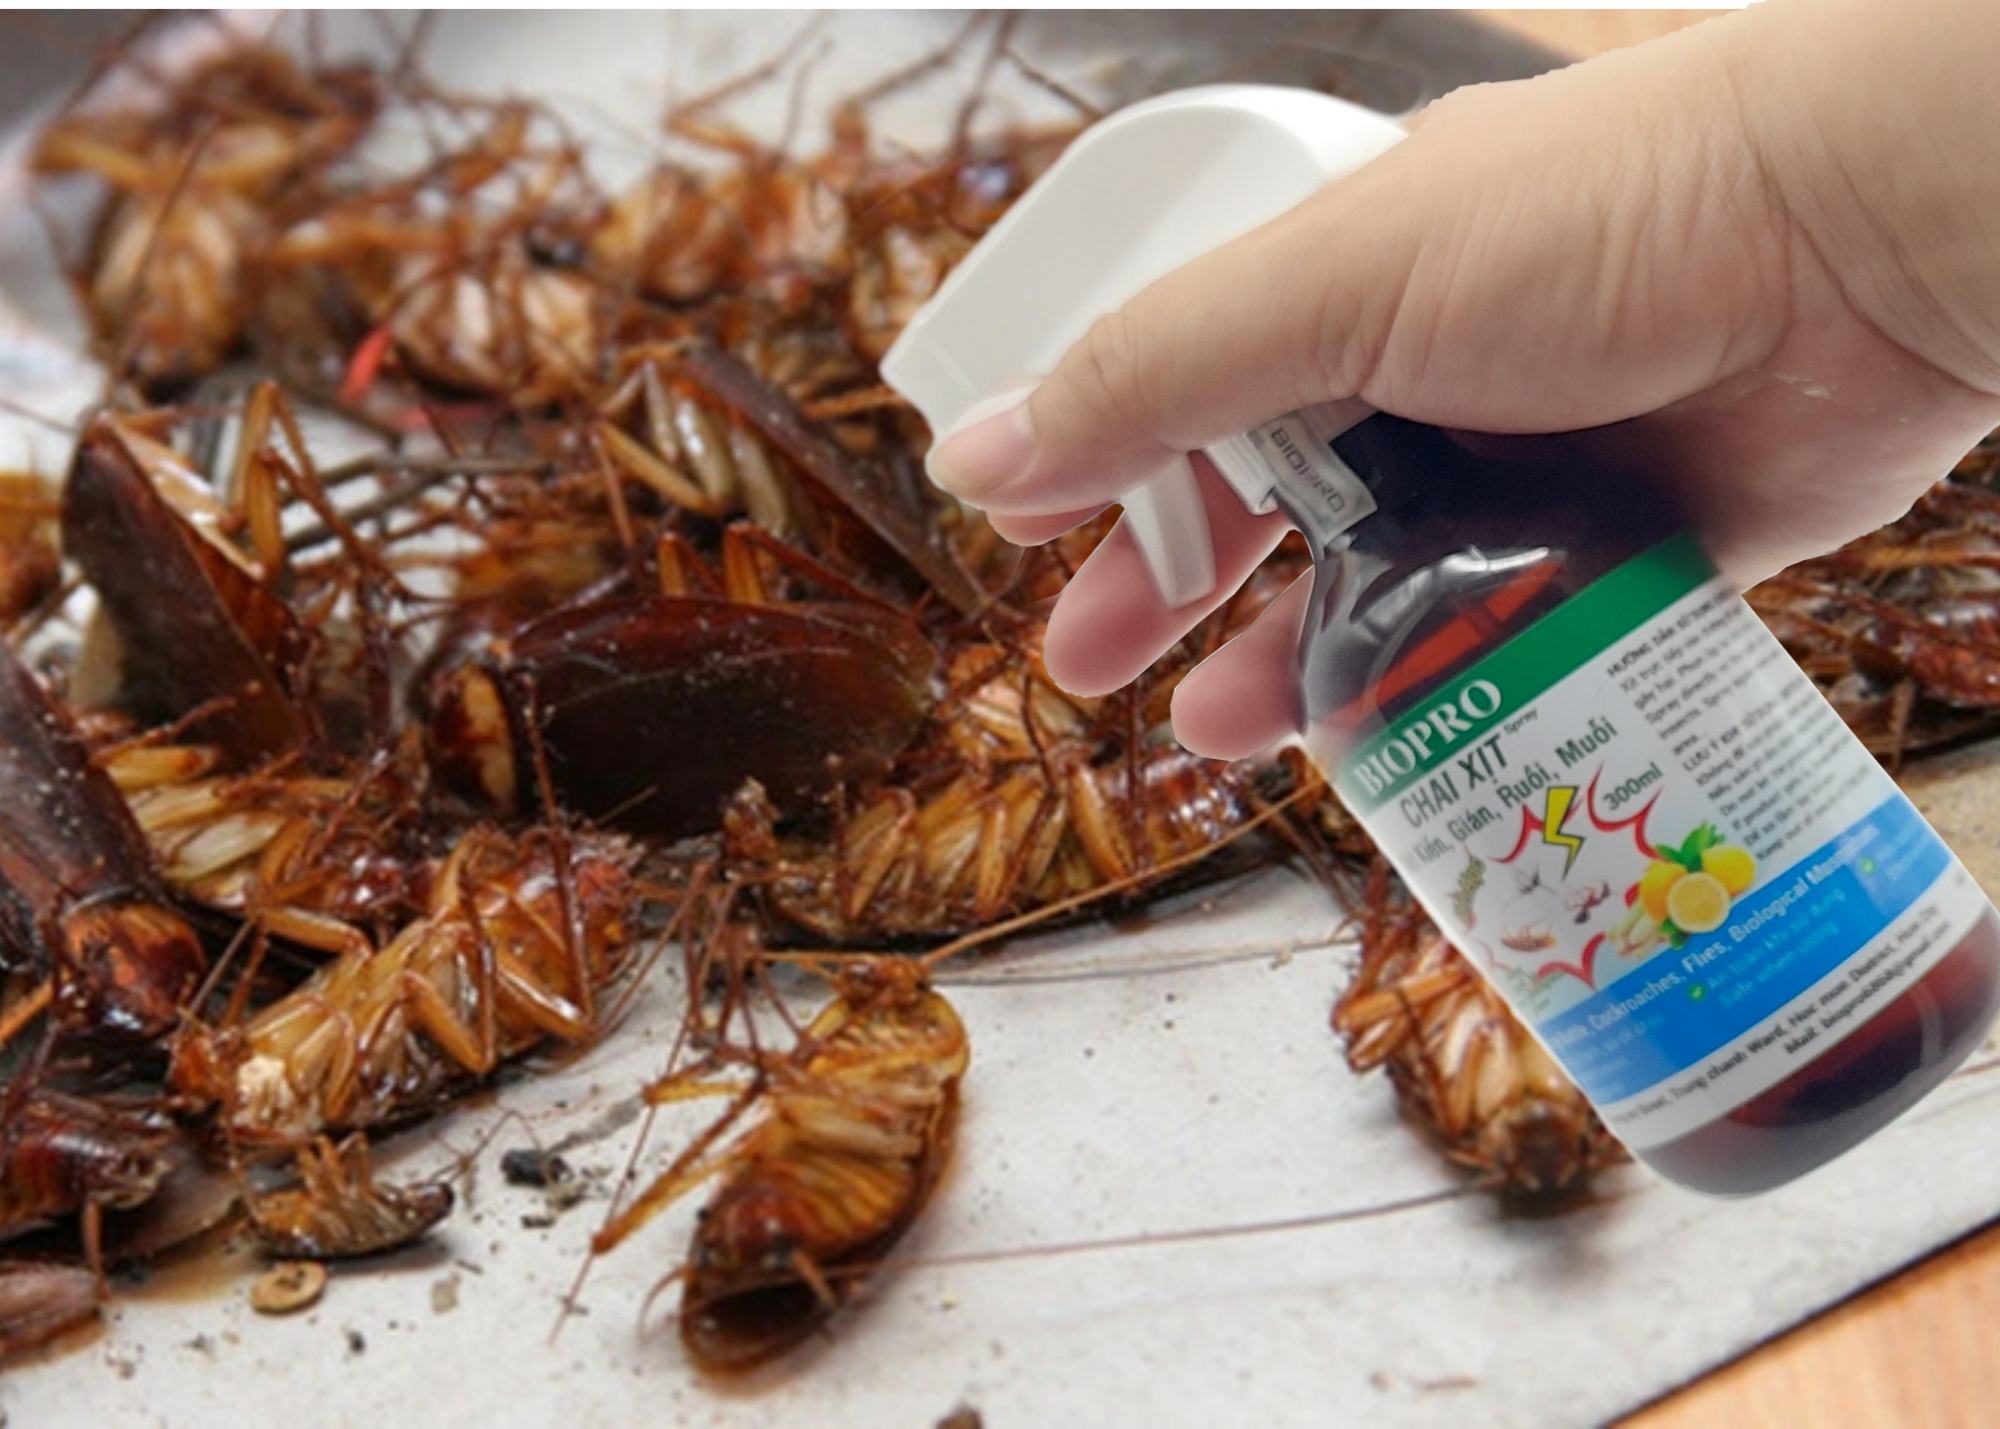 Chai xịt diệt kiến gián ruồi muỗi Sinh học Biopro Hương chanh sả Chai 300ml Diệt sạch côn trùng gây hại An toàn Hiệu quả